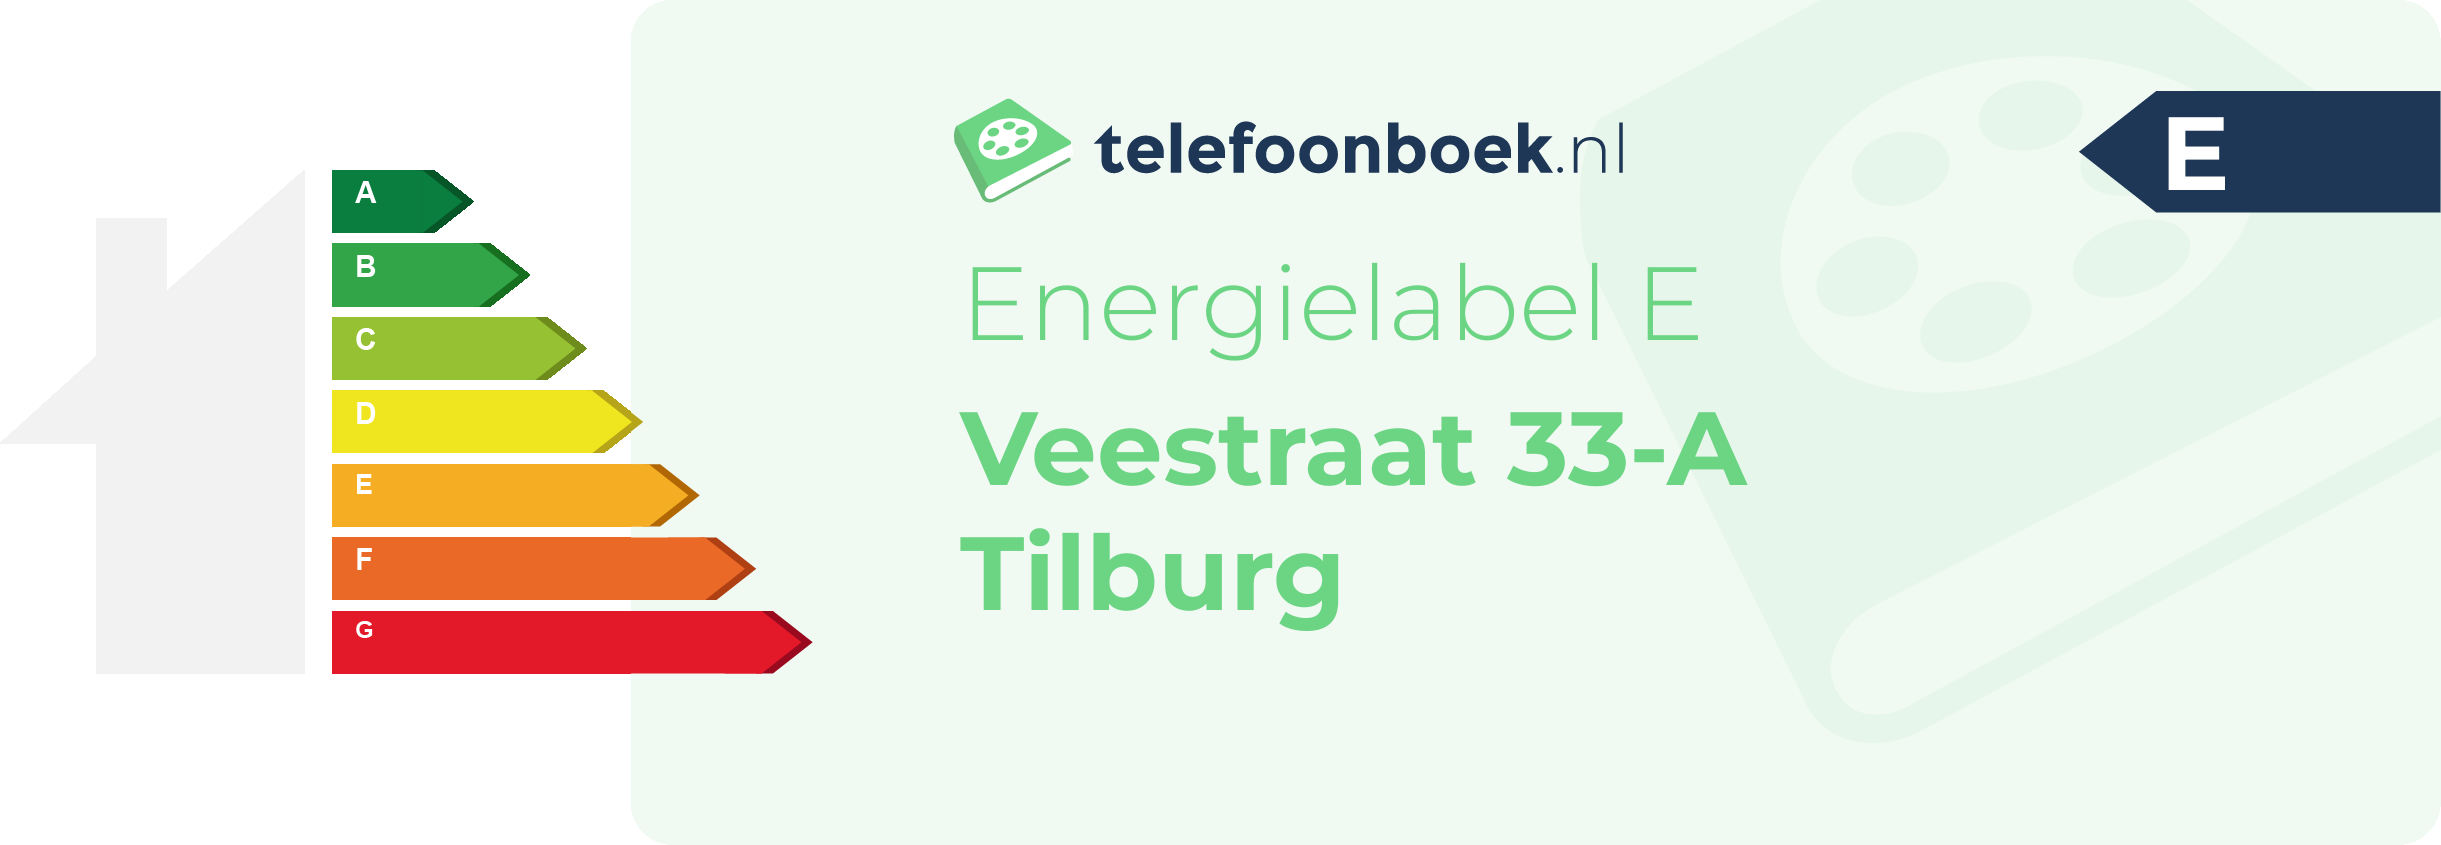 Energielabel Veestraat 33-A Tilburg